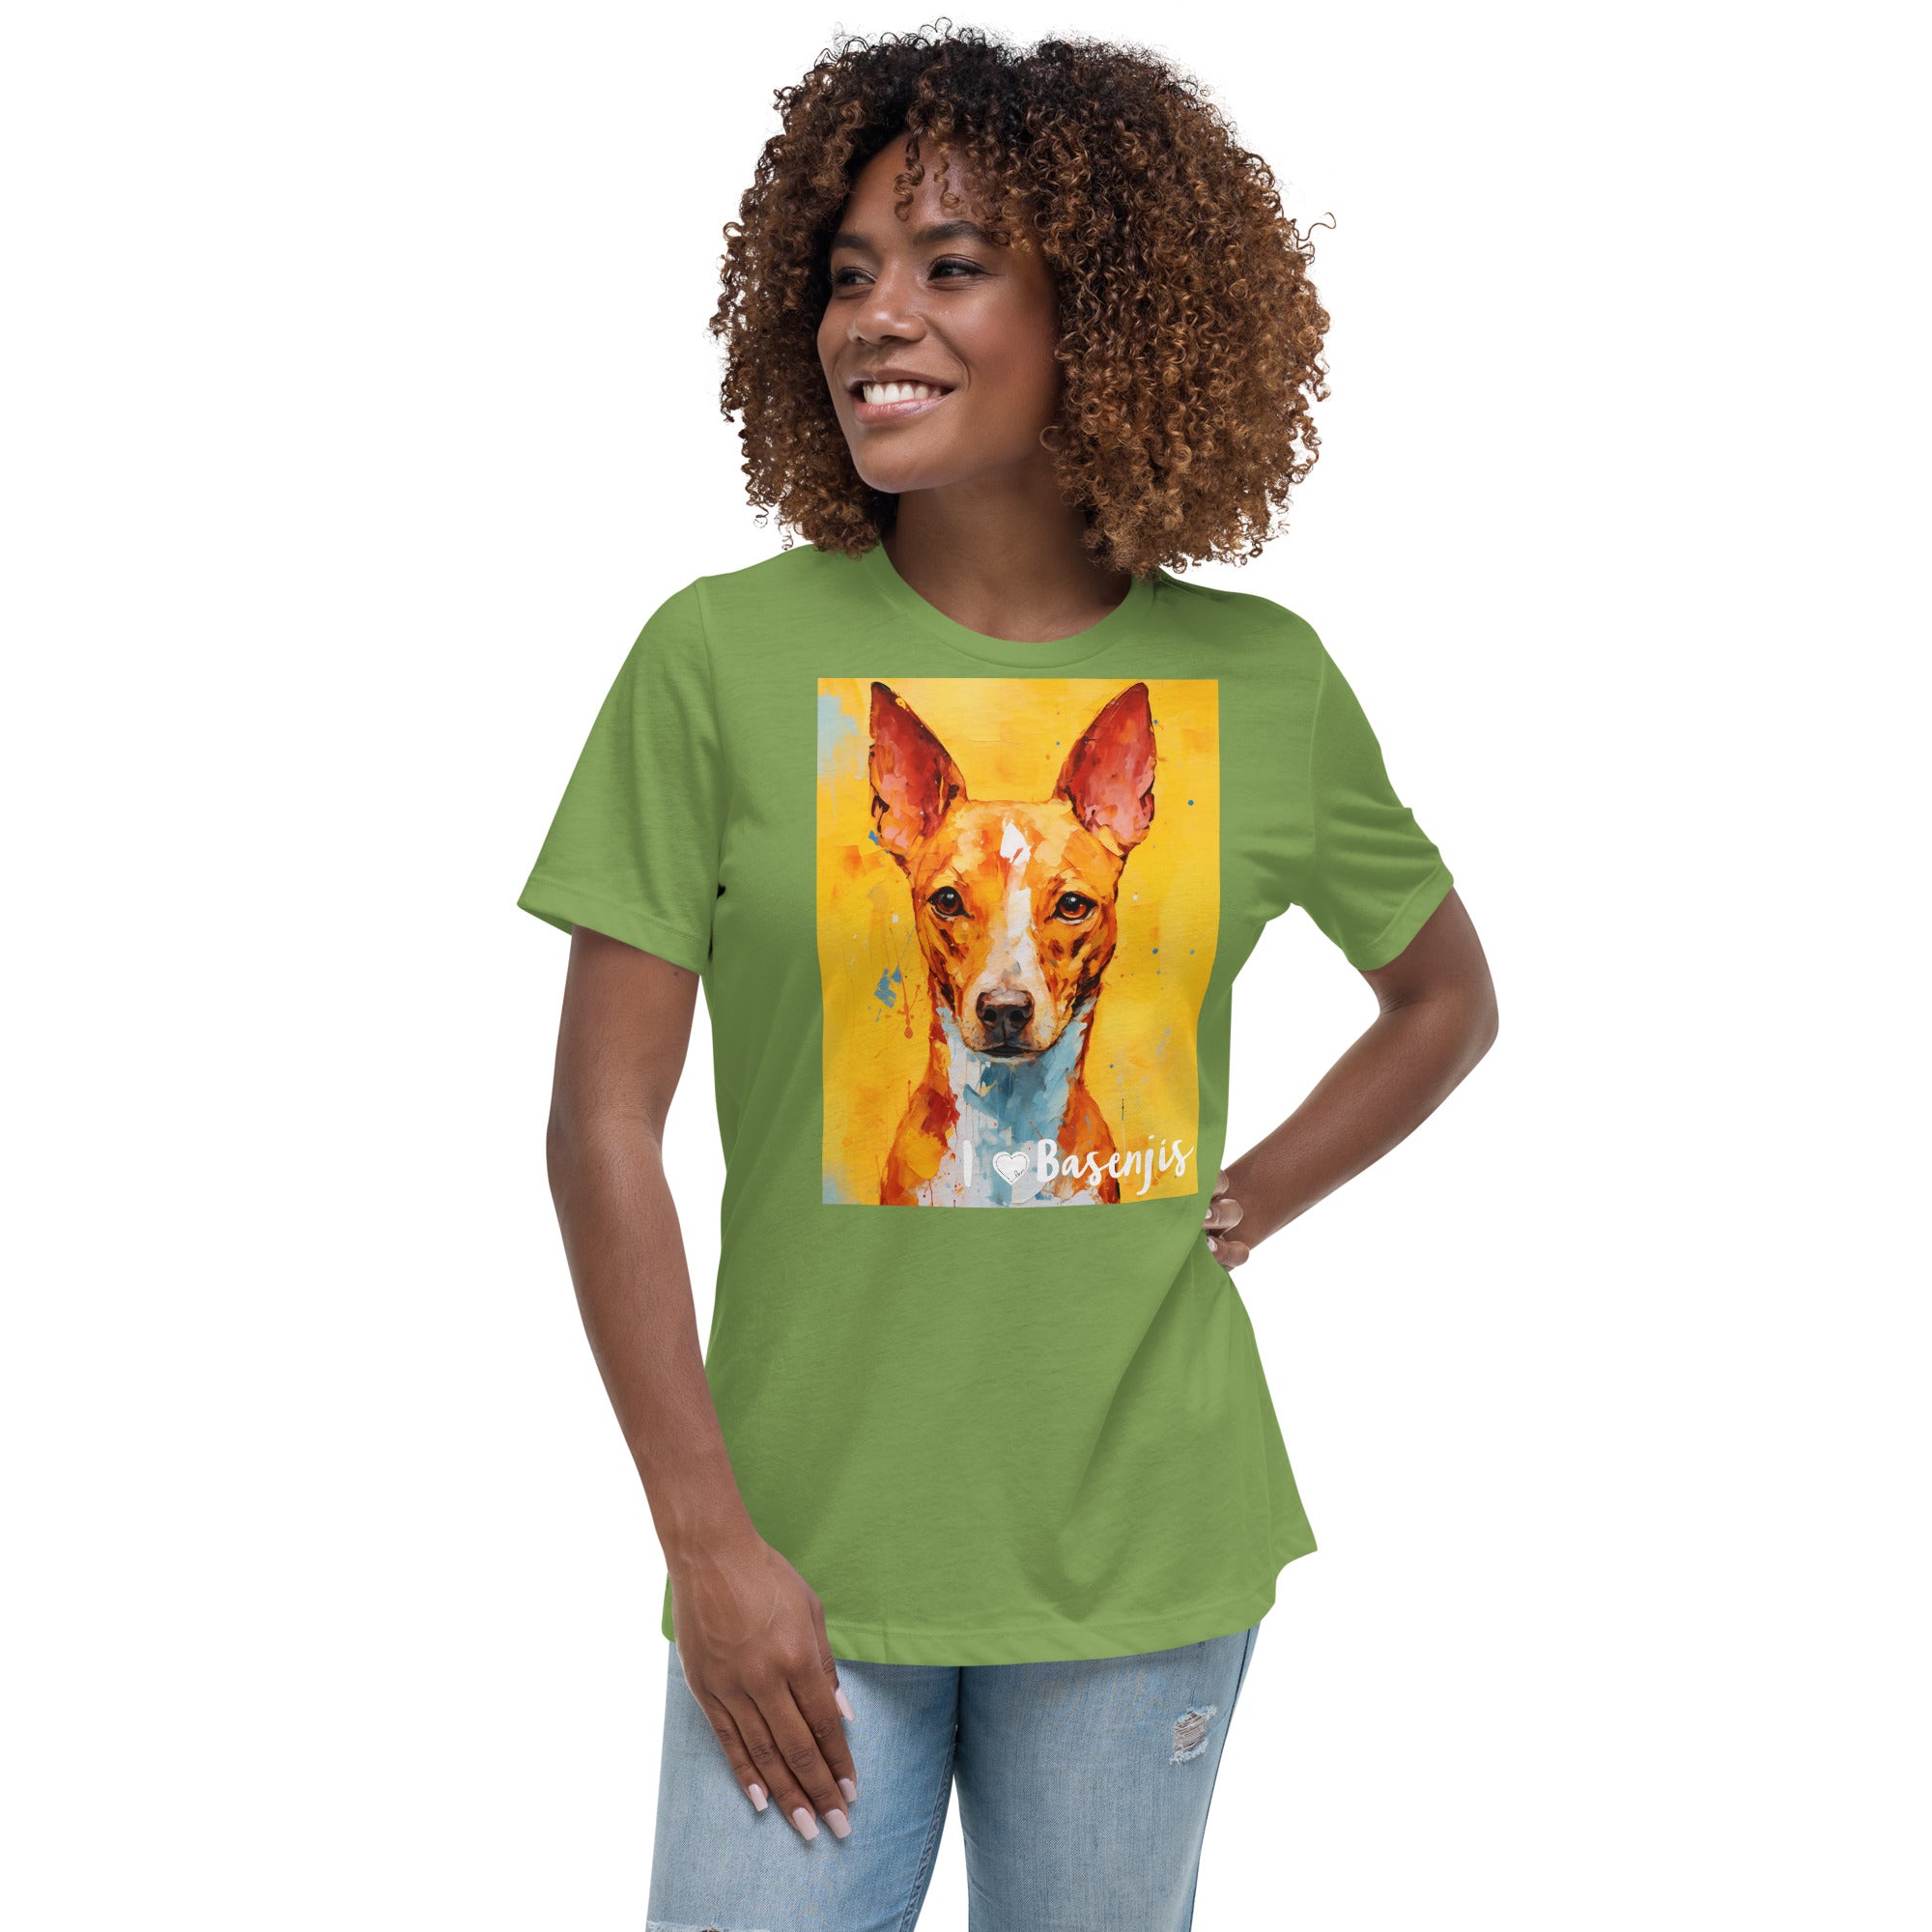 Women's Relaxed T-Shirt - I ❤ Dogs - Basenji